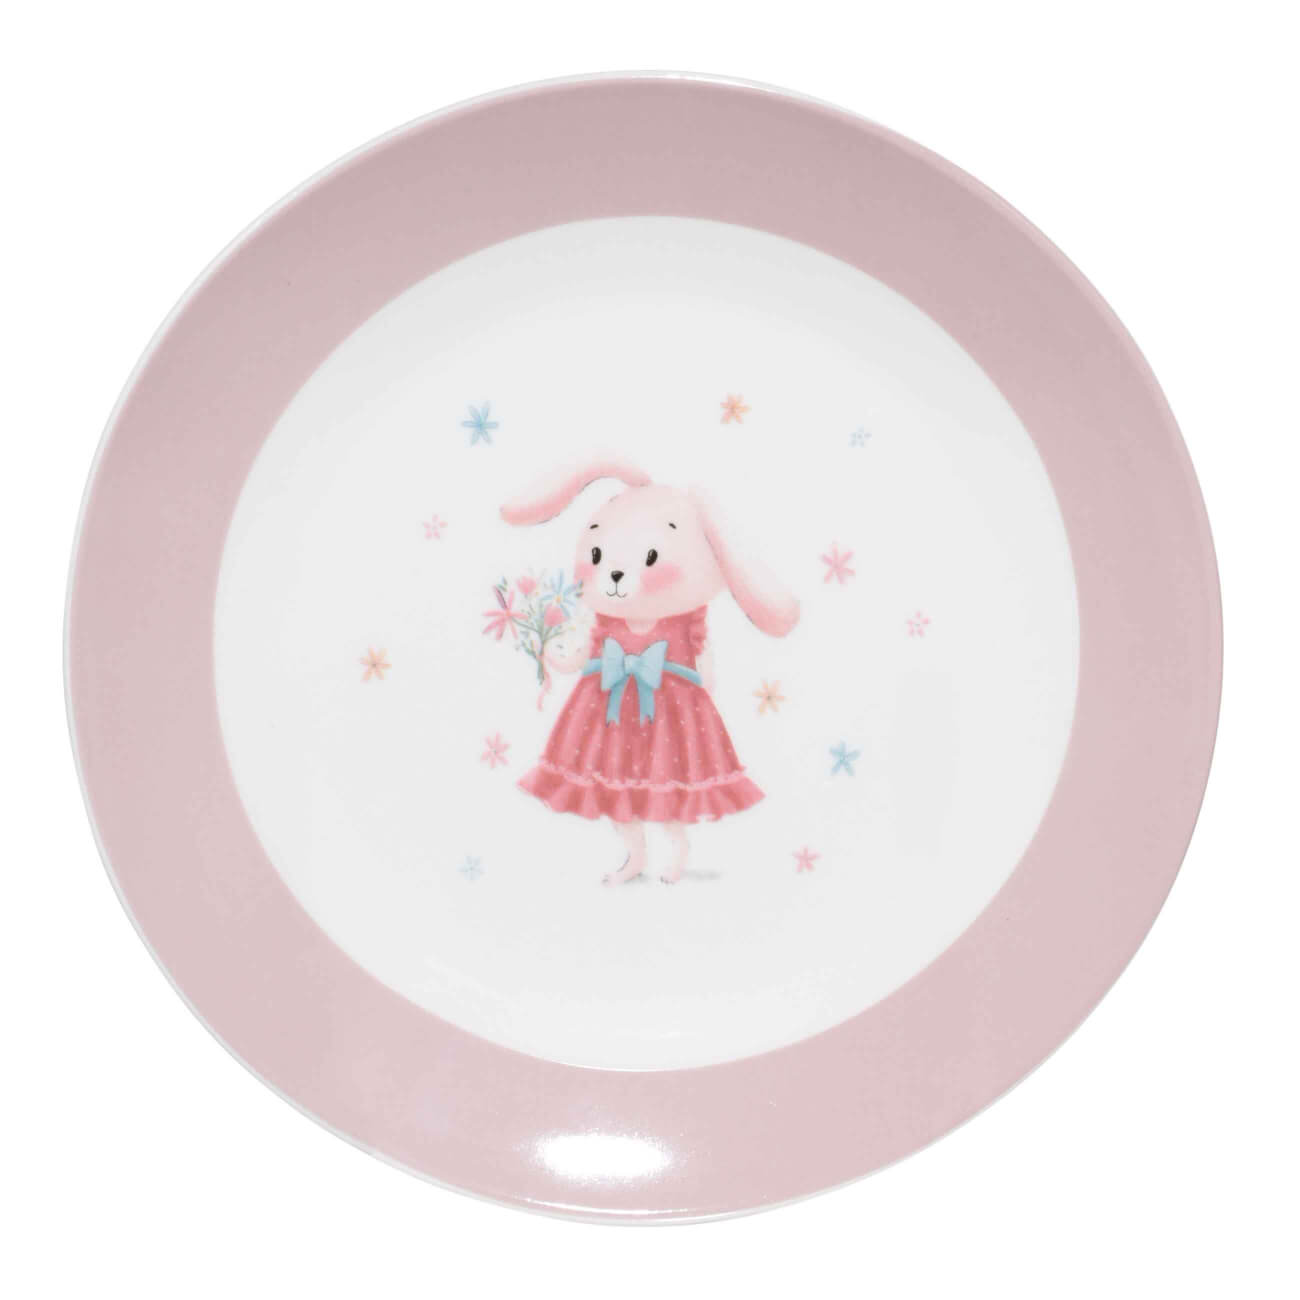 Тарелка закусочная, детская, 19 см, фарфор N, бело-розовая, Крольчиха с цветами, Ideas life тарелка детская из бамбука